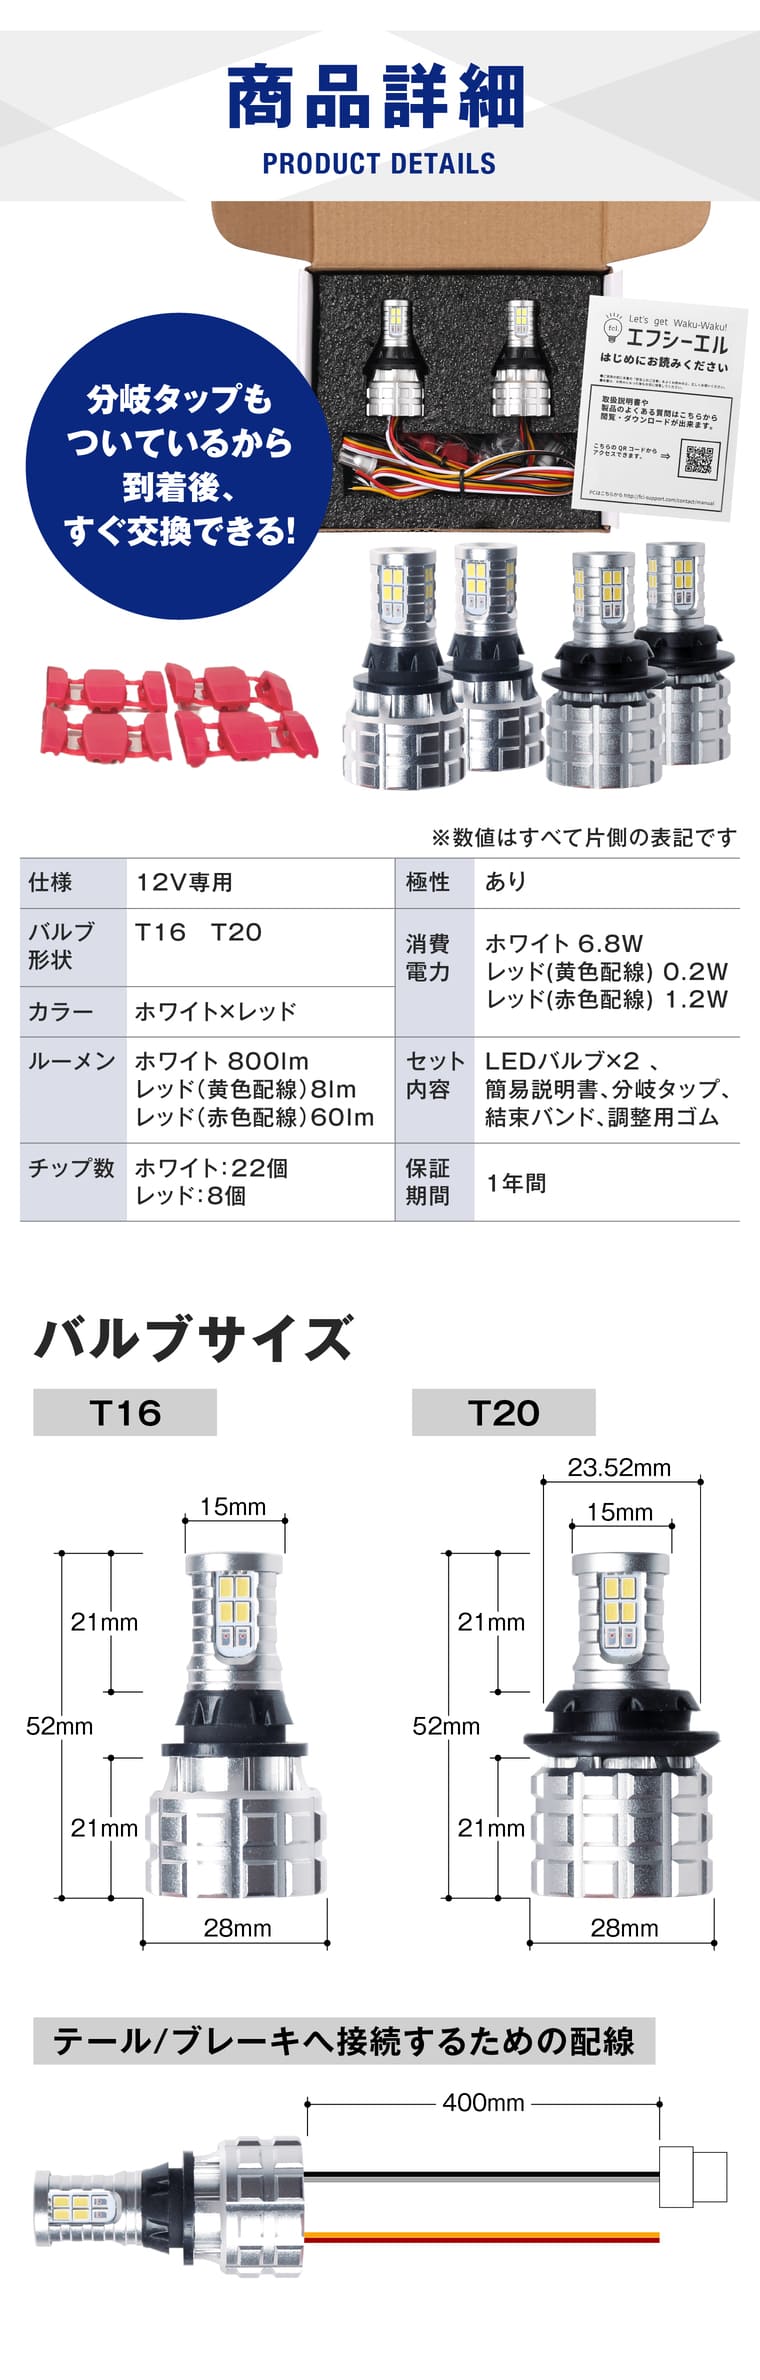 商品詳細 T16 T20 分岐タップ ホワイト 800lm レッド 60lm 簡易説明書 バルブサイズ